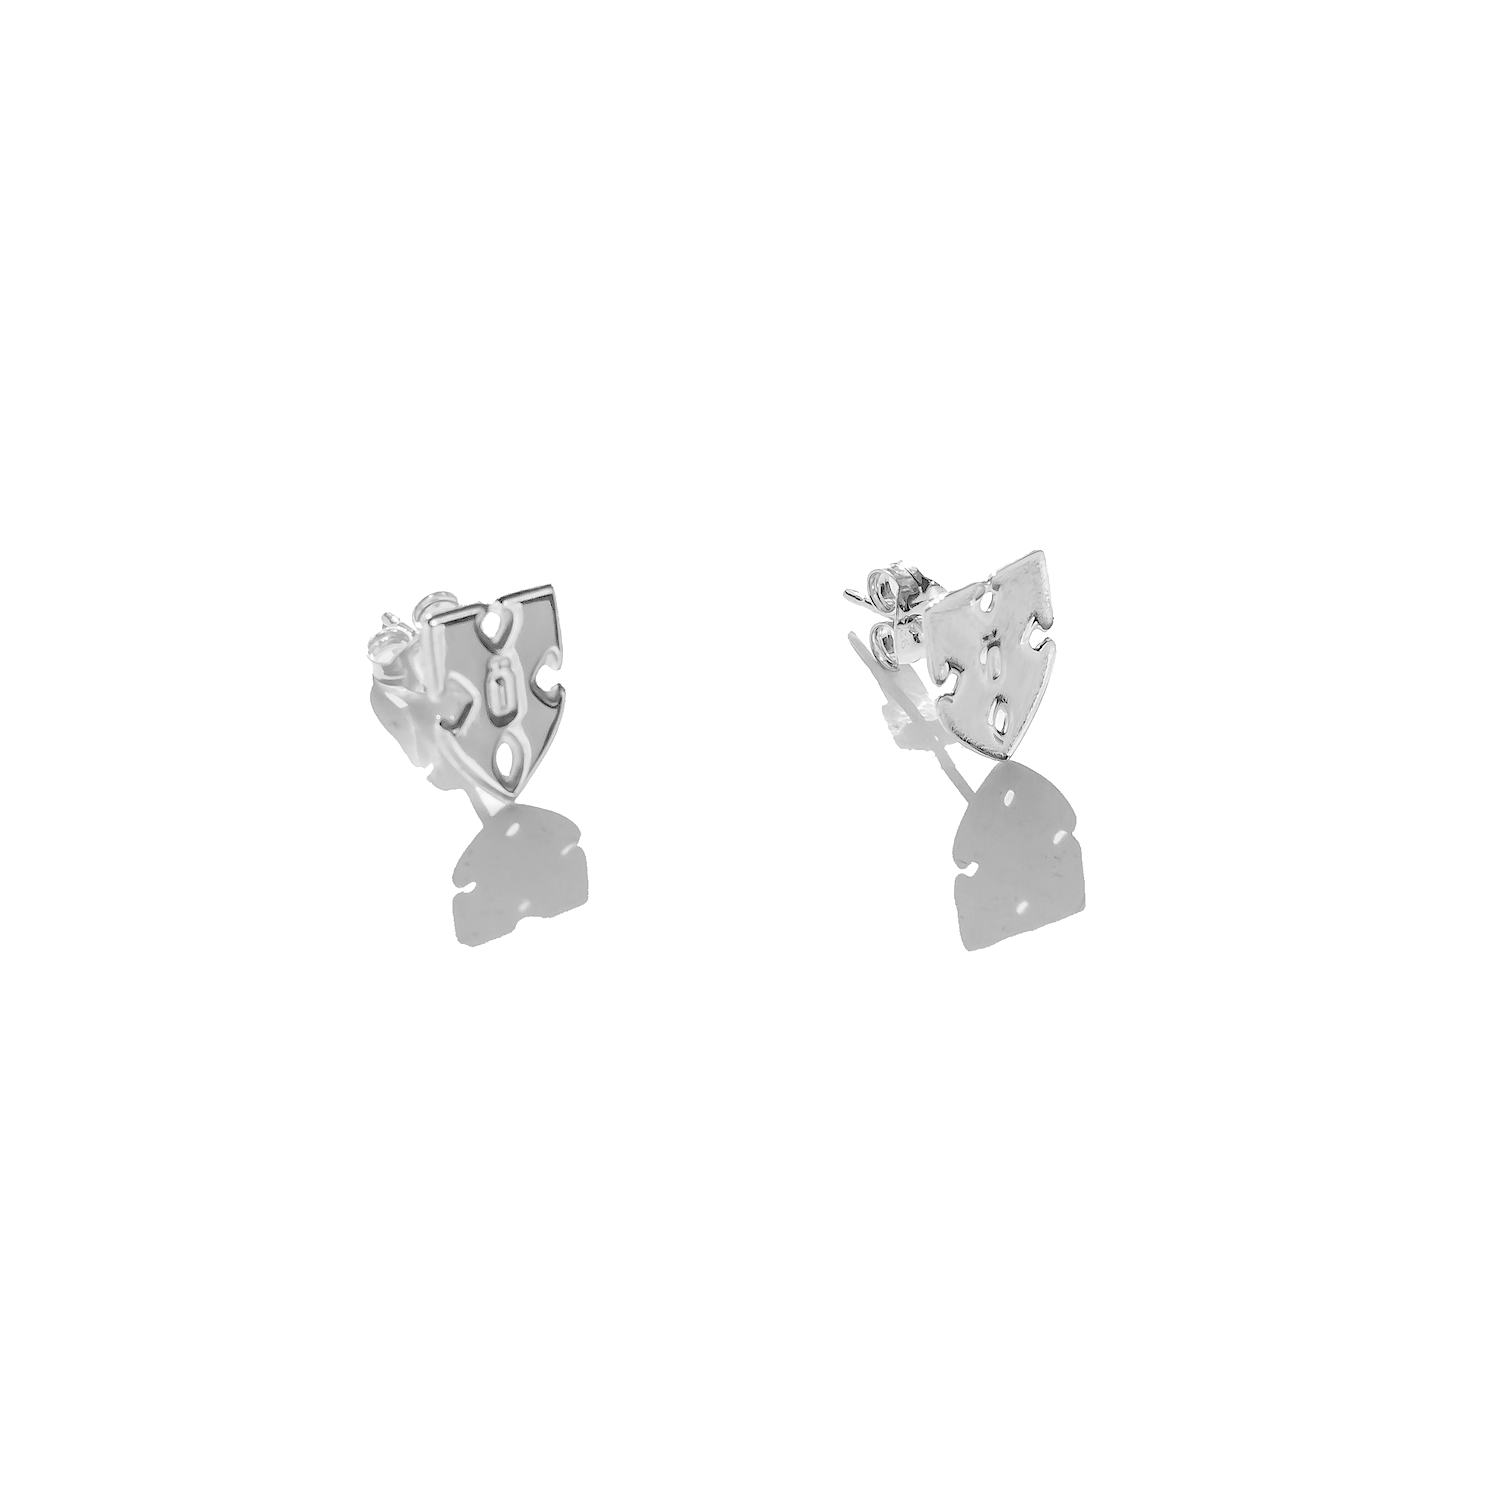 INNER CHAMPION Earrings - Silver